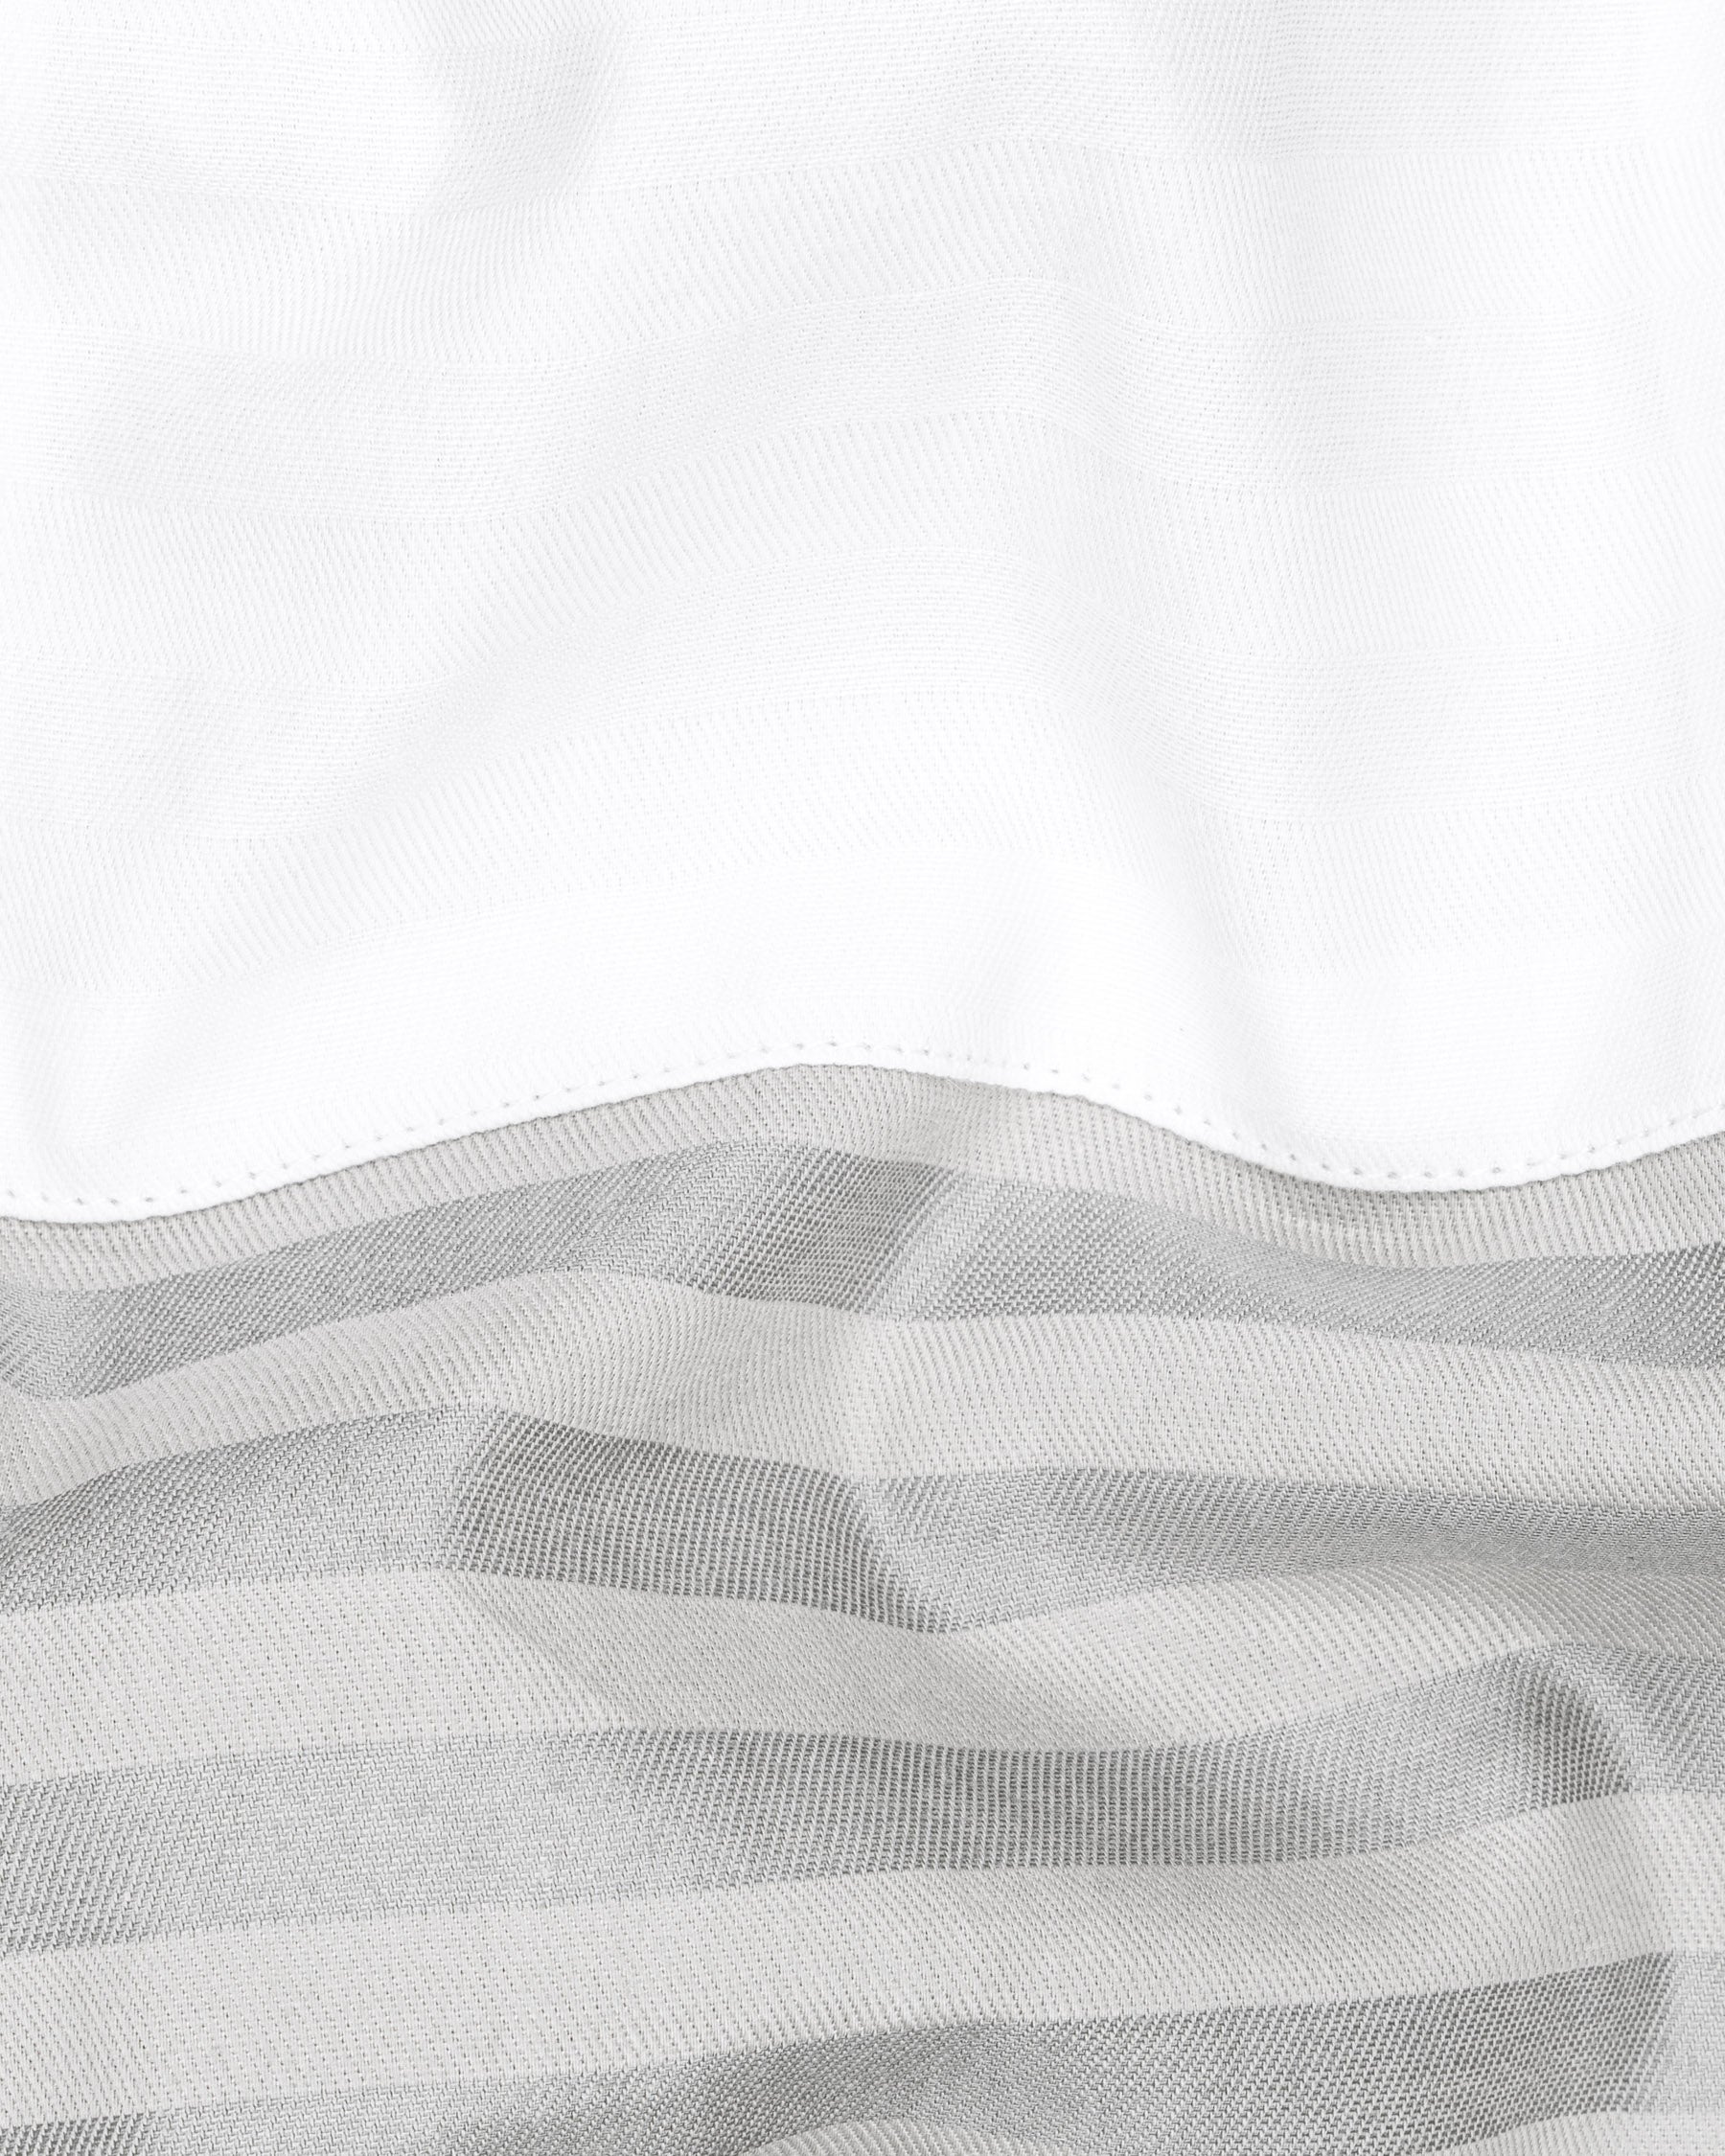 Half White and Half Grey Striped Twill Premium Cotton Designer Shirt  6744-P140-38,6744-P140-38,6744-P140-39,6744-P140-39,6744-P140-40,6744-P140-40,6744-P140-42,6744-P140-42,6744-P140-44,6744-P140-44,6744-P140-46,6744-P140-46,6744-P140-48,6744-P140-48,6744-P140-50,6744-P140-50,6744-P140-52,6744-P140-52